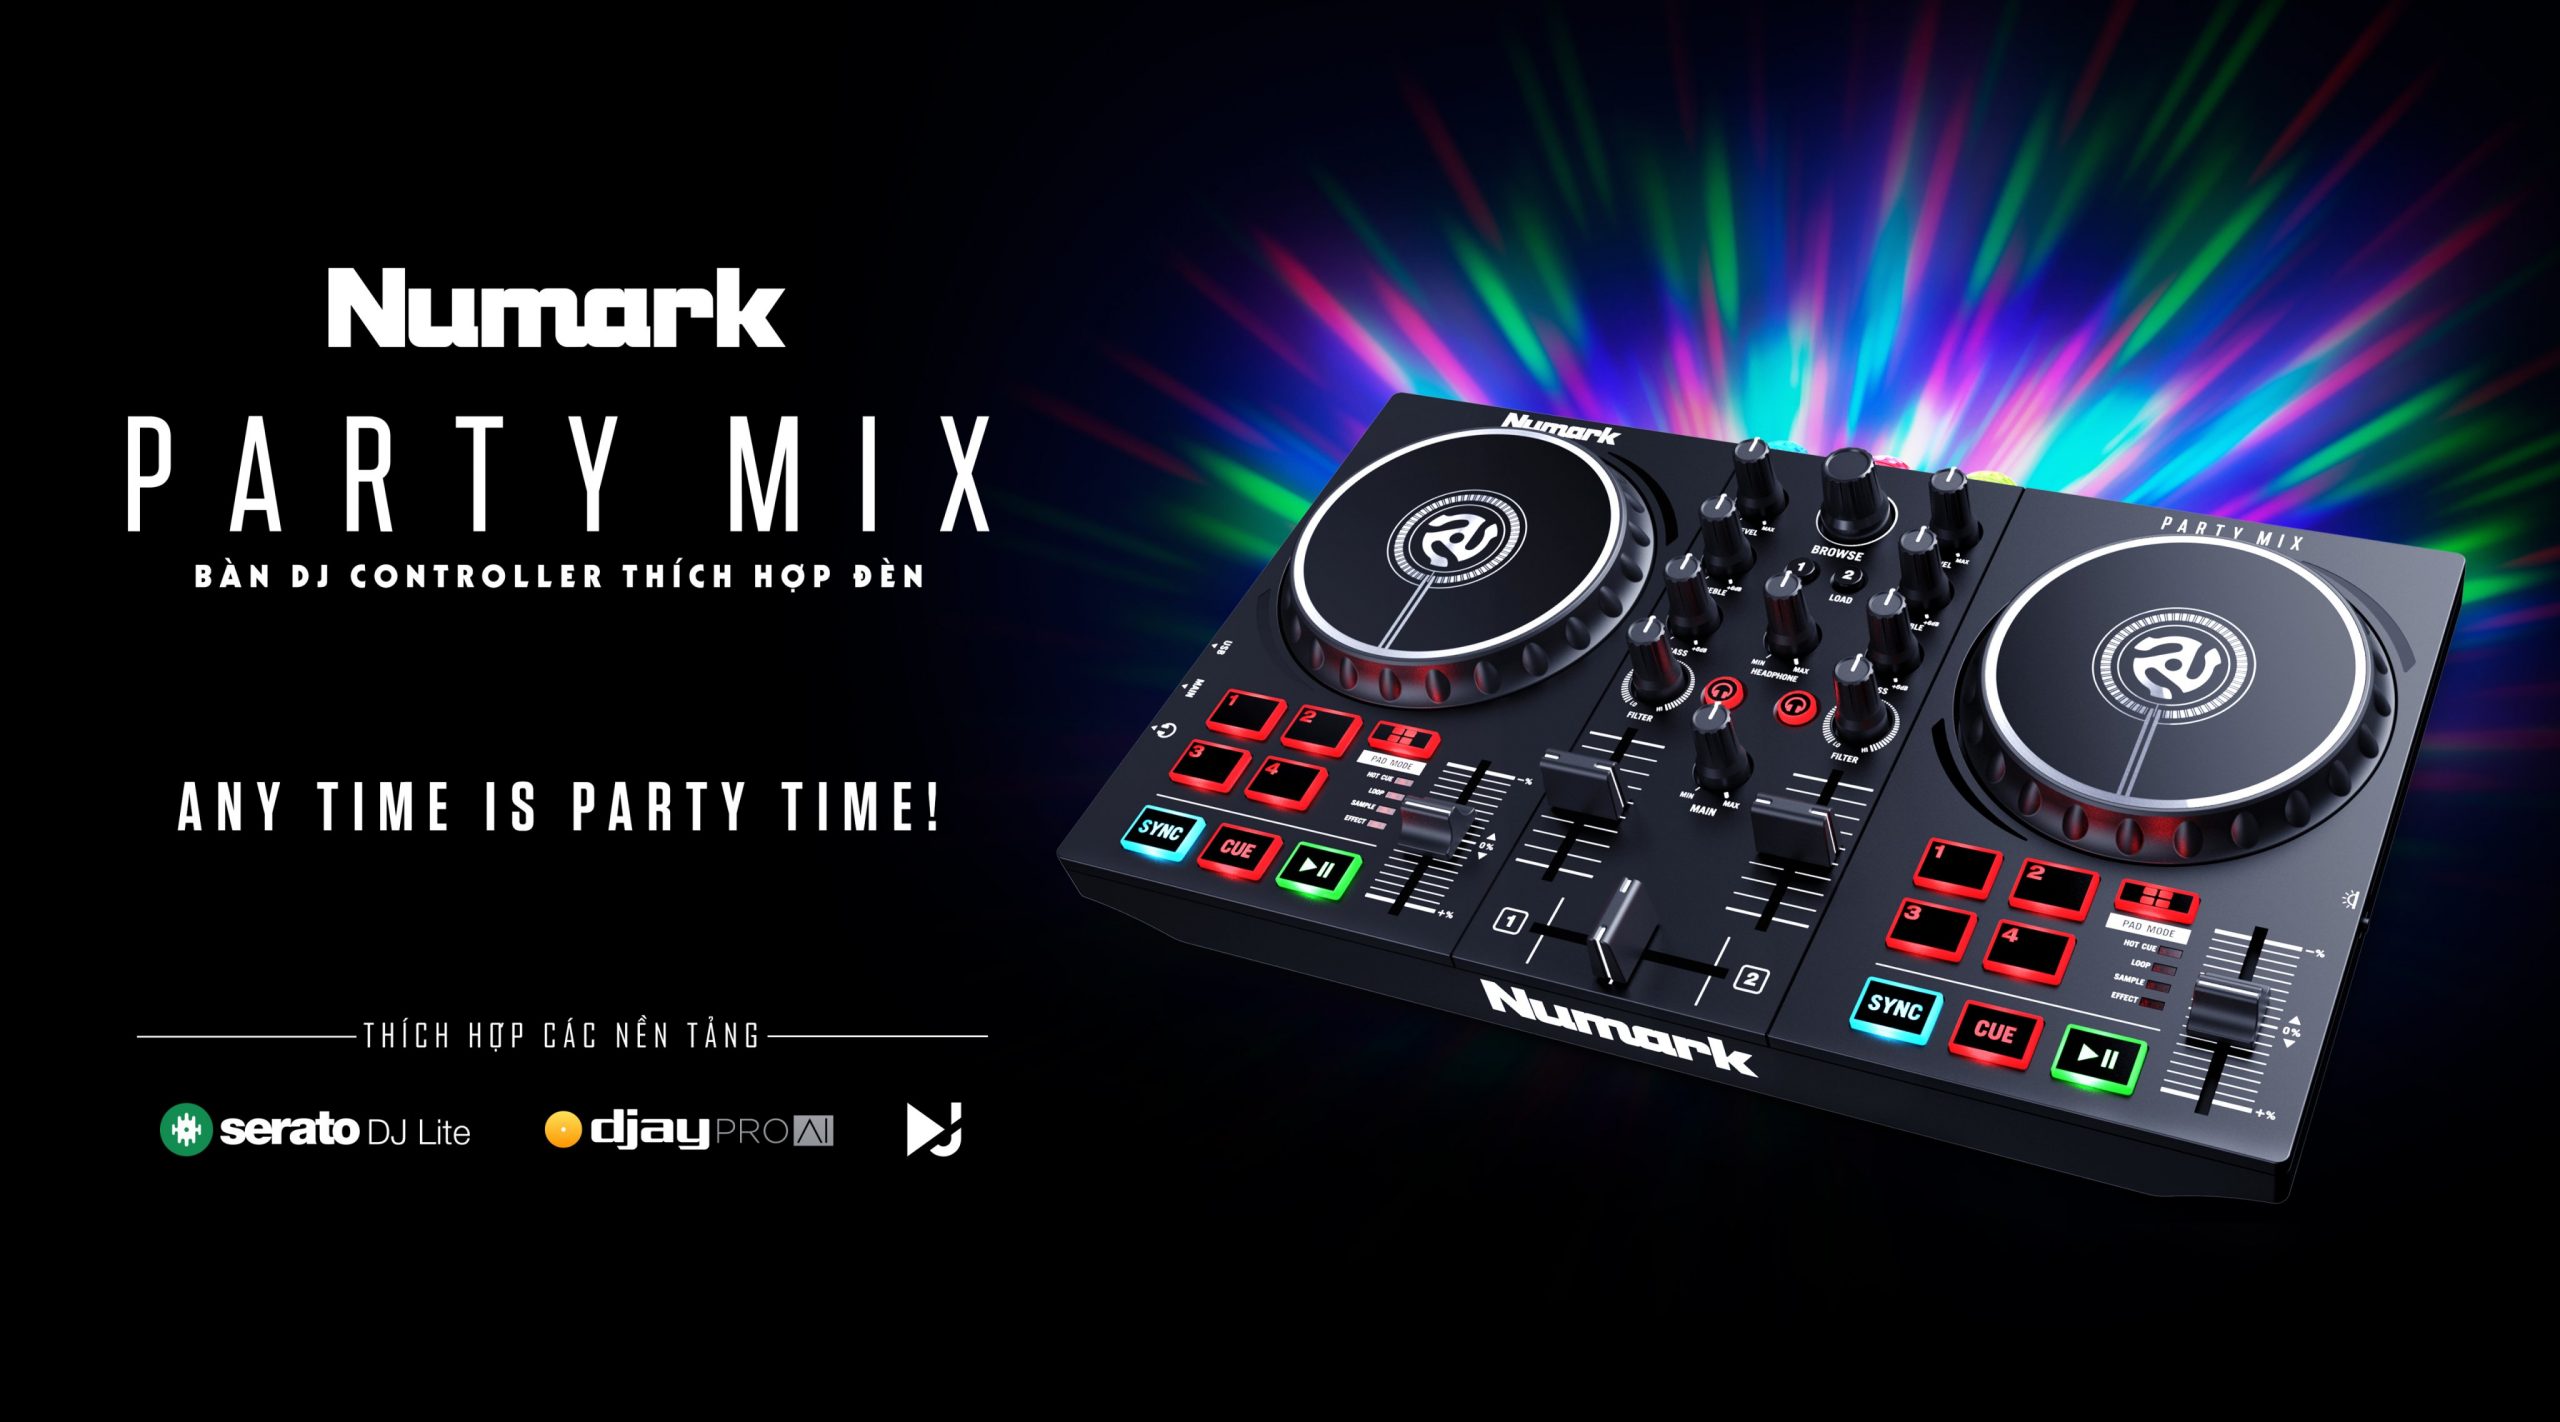 bàn dj giá rẻ numark party mix